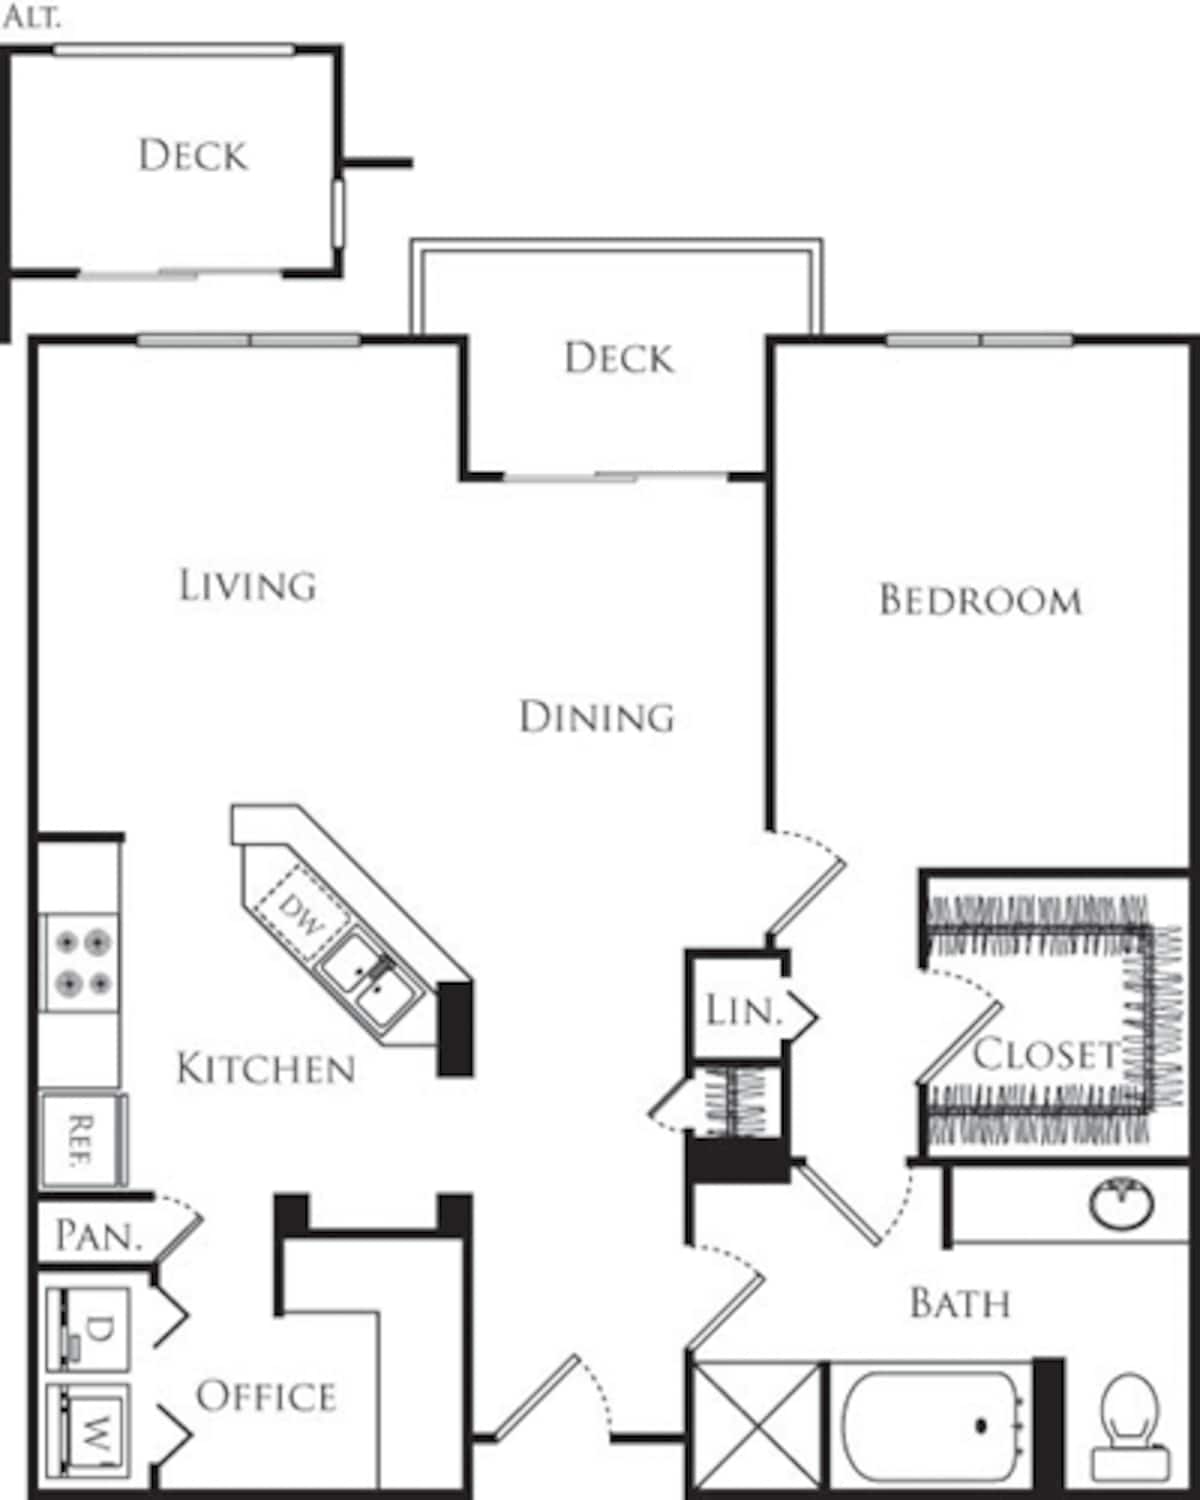 Floorplan diagram for Plan C, showing 1 bedroom